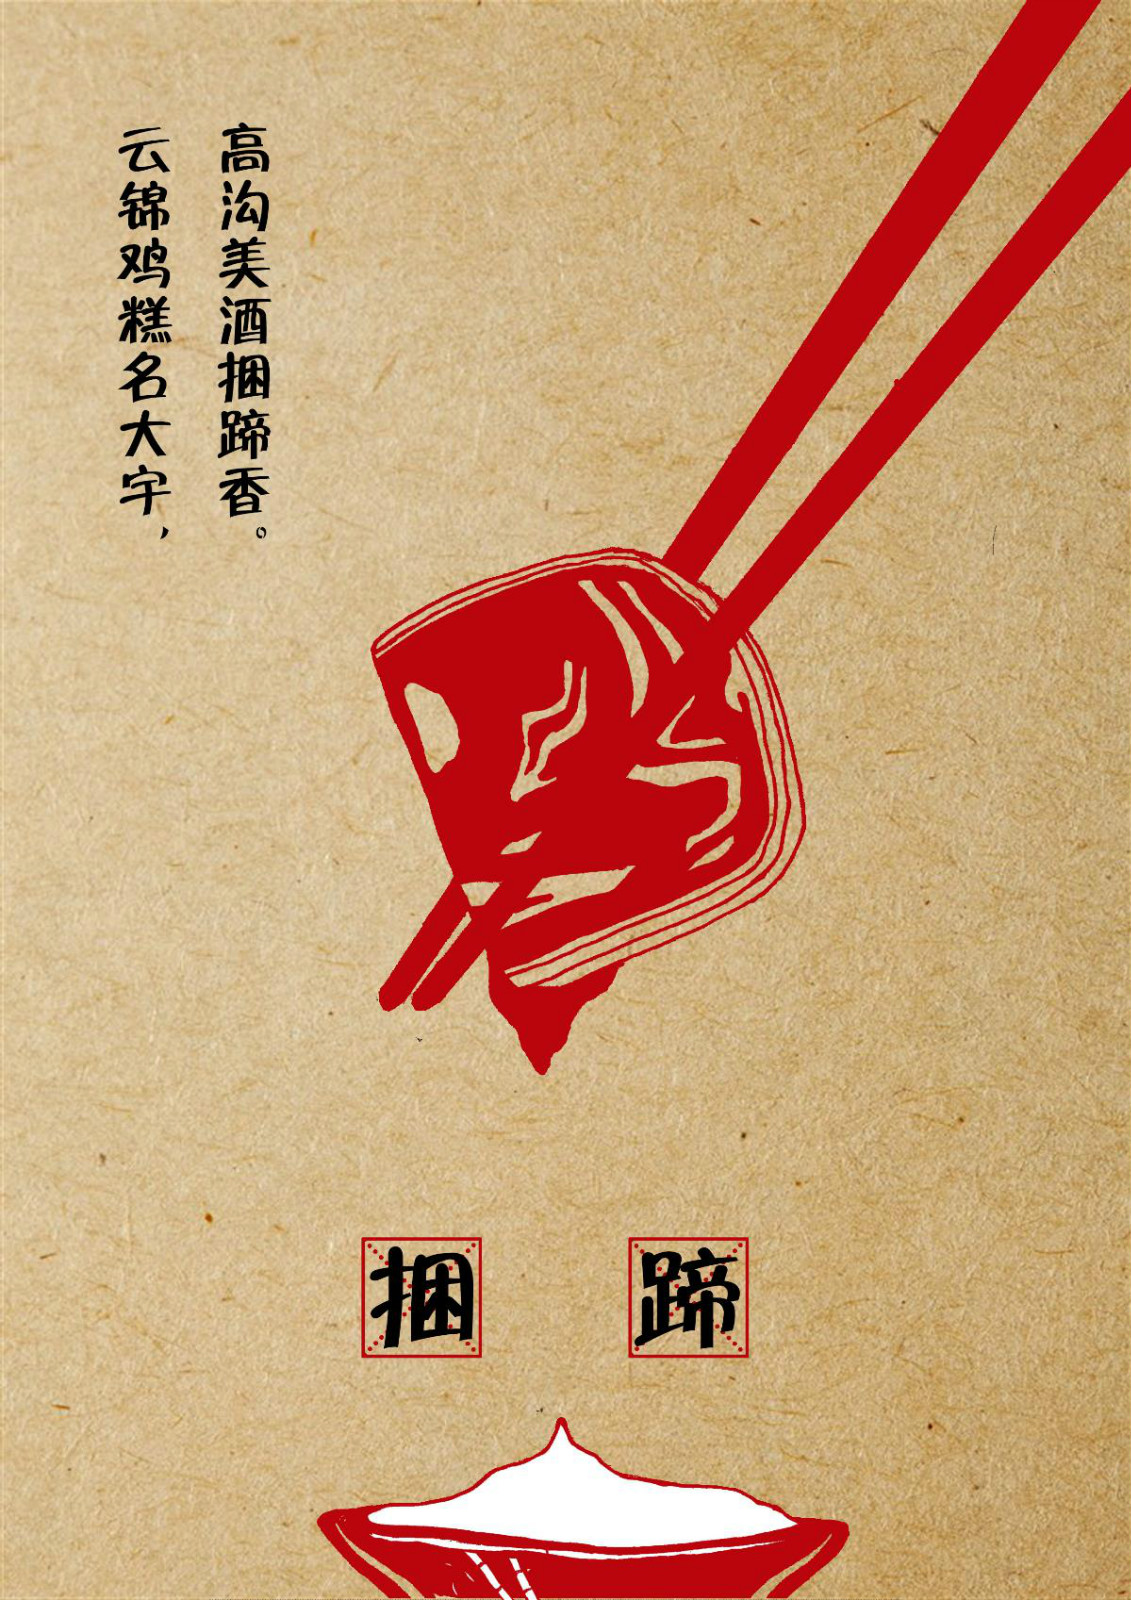 淮安饮食文化宣传海报